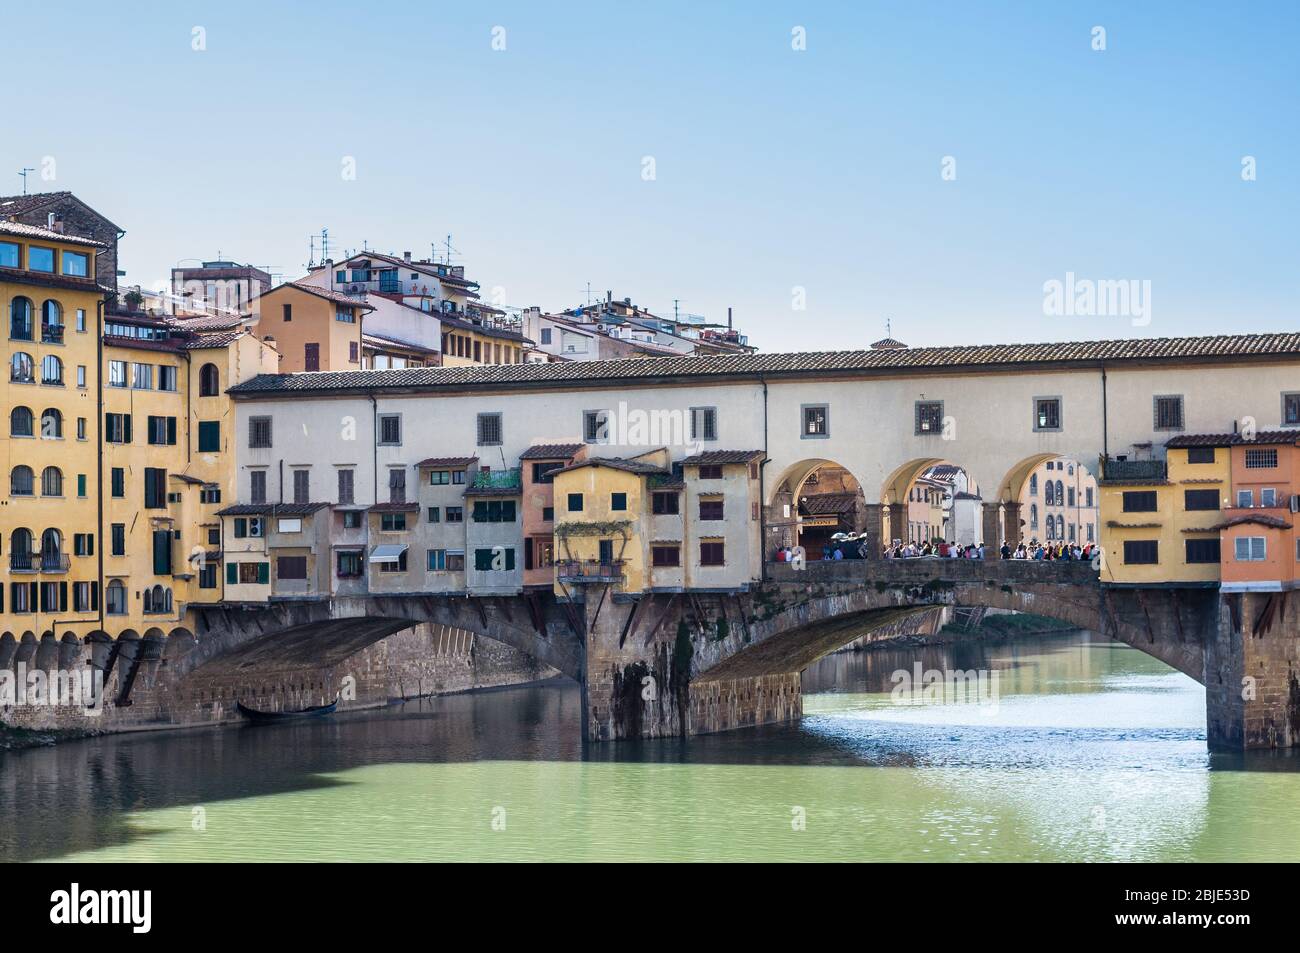 FLORENCE, ITALIE - 14 AVRIL 2013 : le Ponte Vecchio (Vieux pont) est un pont d'arche segmentaire en pierre médiévale à centre fermé au-dessus de la rivière Arno. Floren Banque D'Images